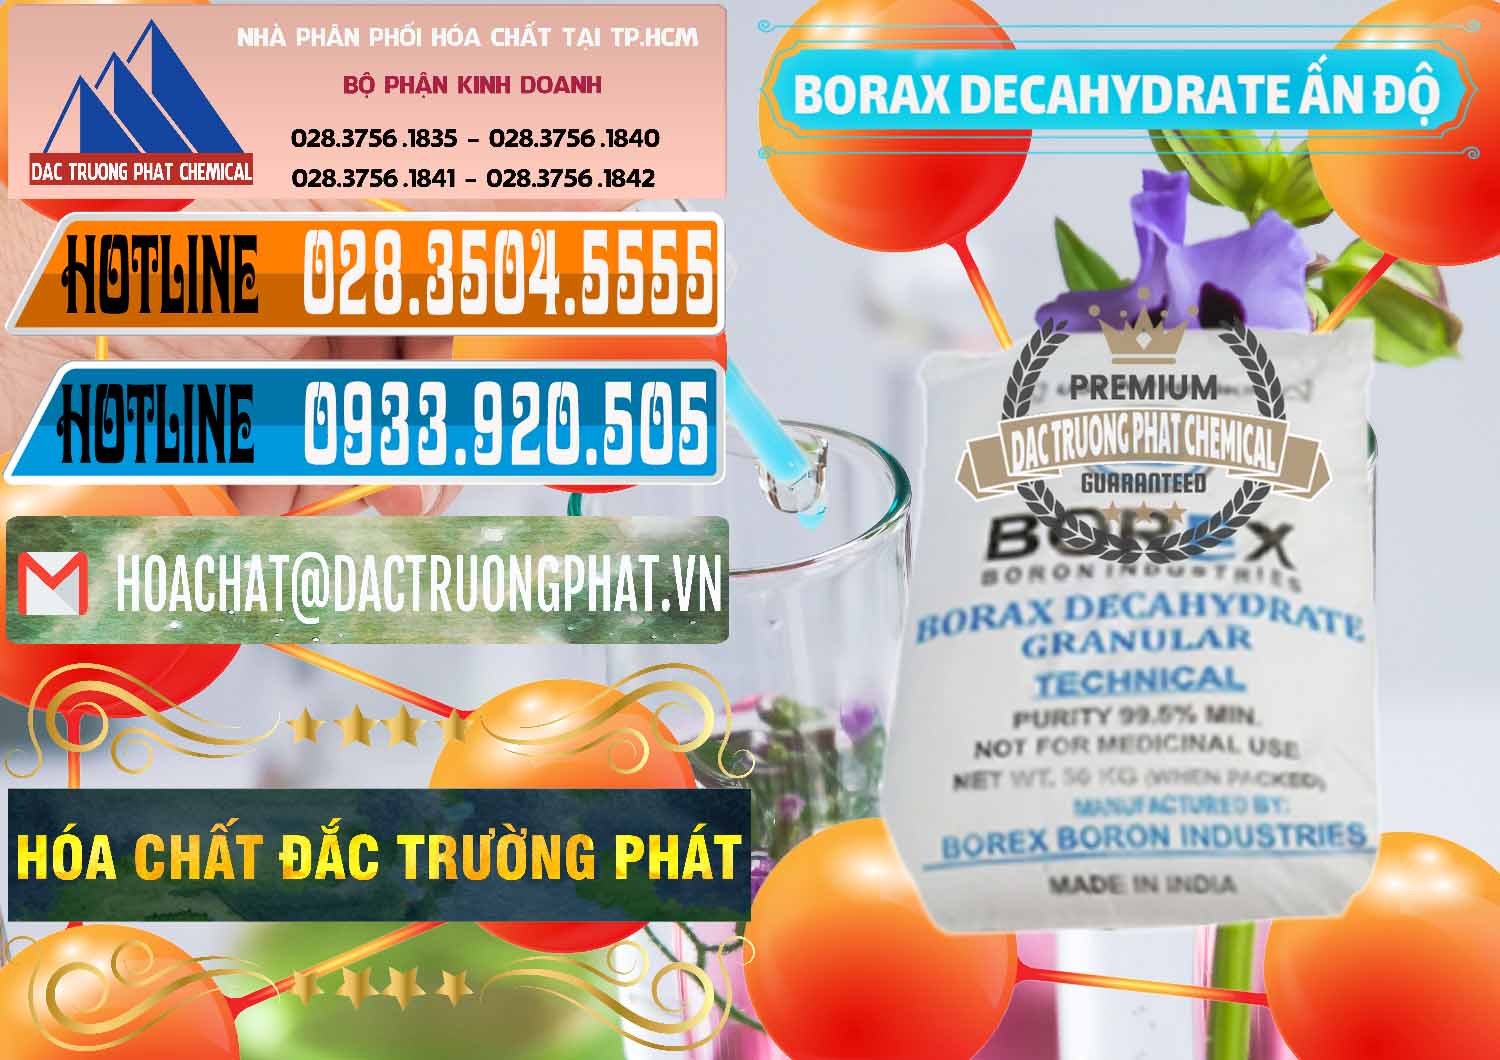 Cty chuyên kinh doanh & bán Borax Decahydrate Ấn Độ India - 0449 - Phân phối & cung cấp hóa chất tại TP.HCM - stmp.net